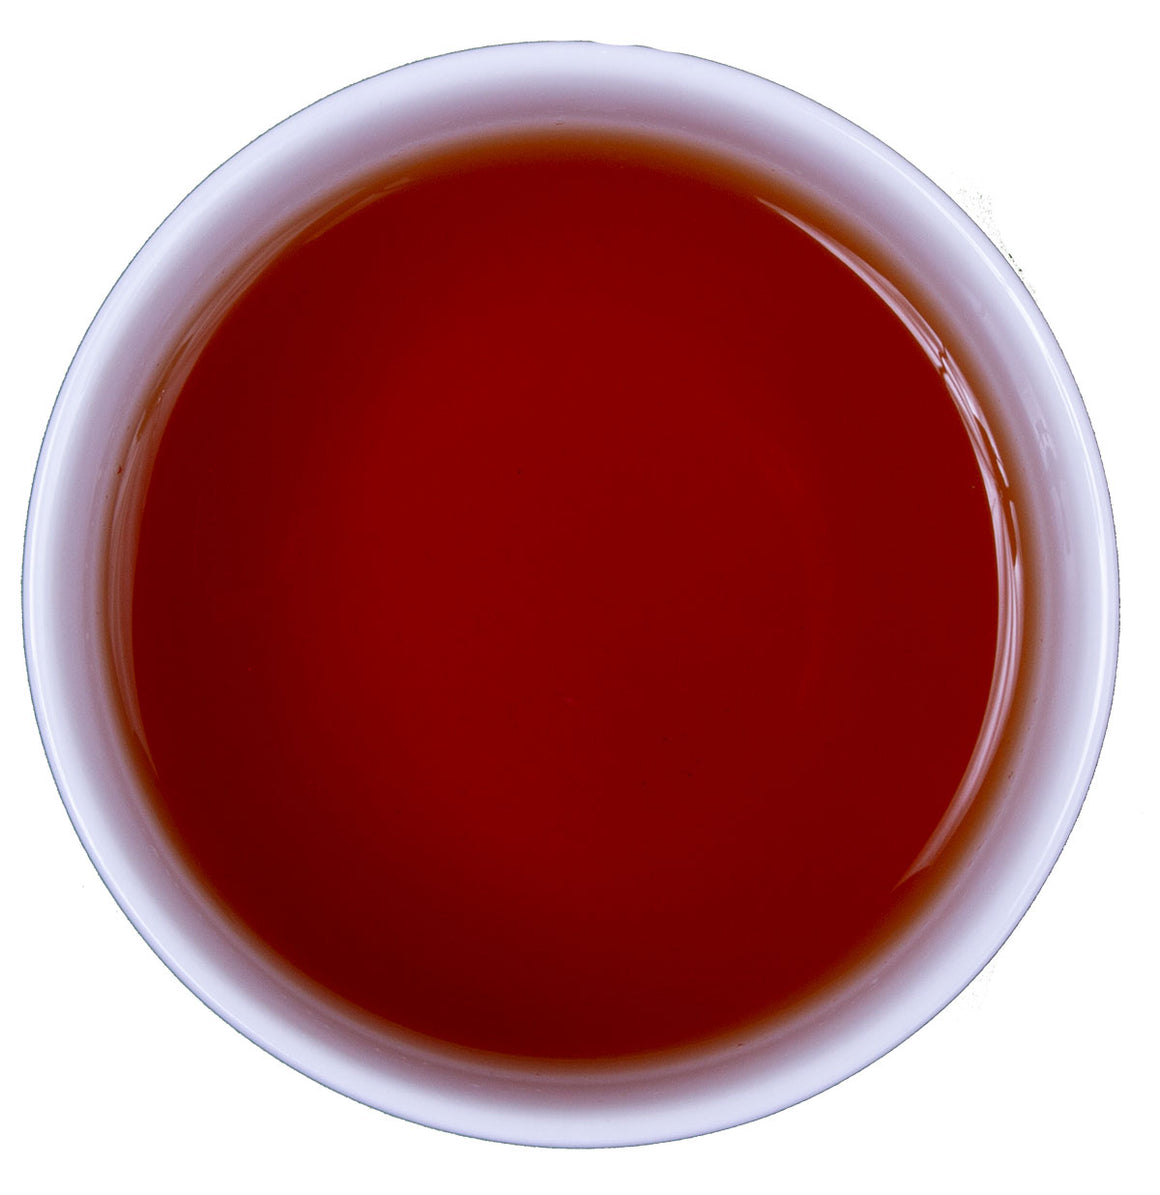 Hathikuli tea liquid SoMo Tea